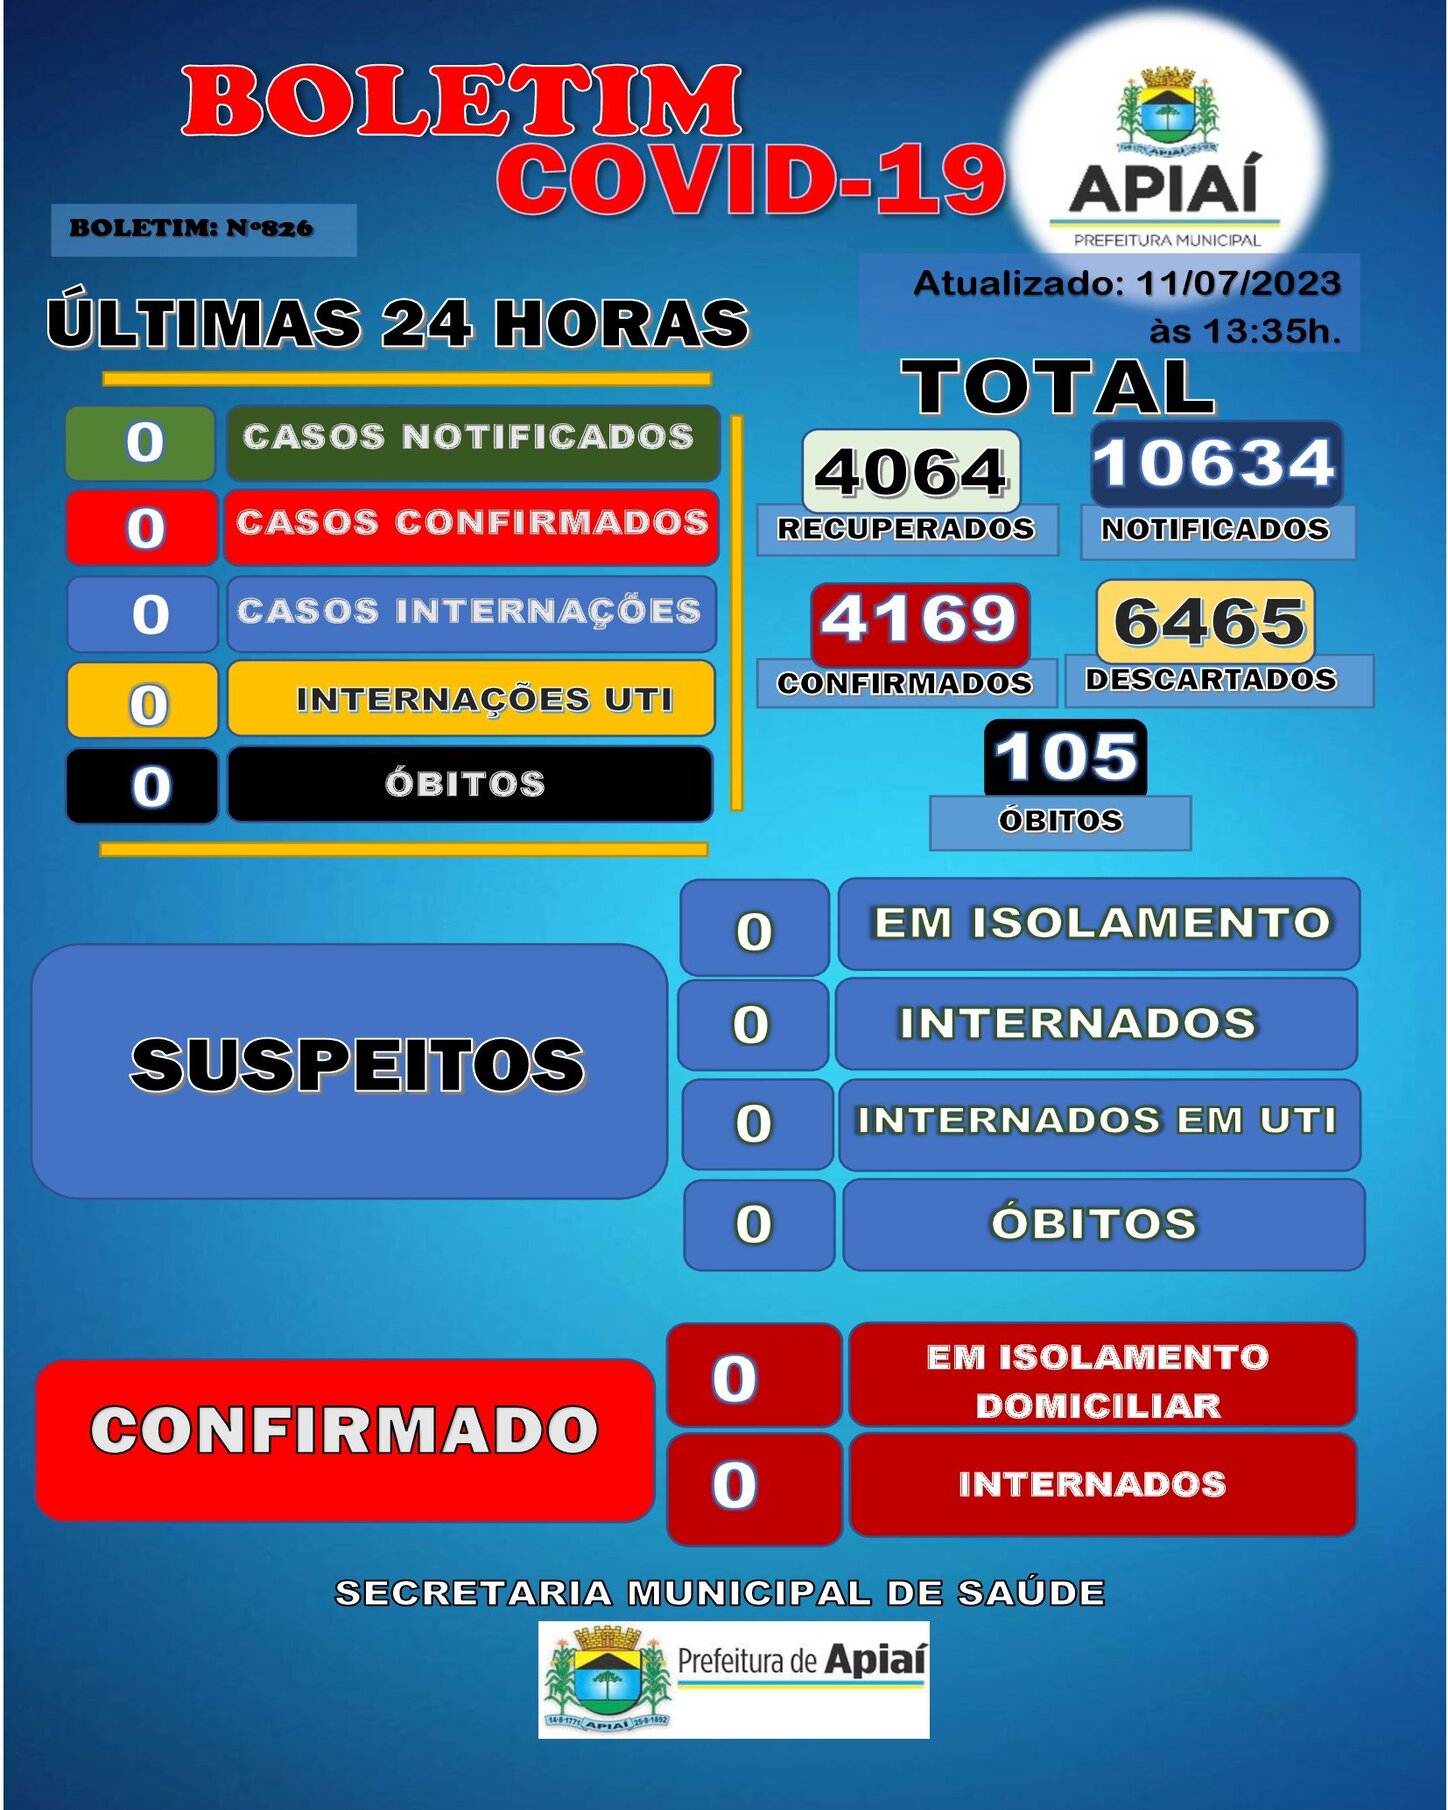 POUPATEMPO É REALIDADE EM APIAÍ – Prefeitura Municipal de Apiaí